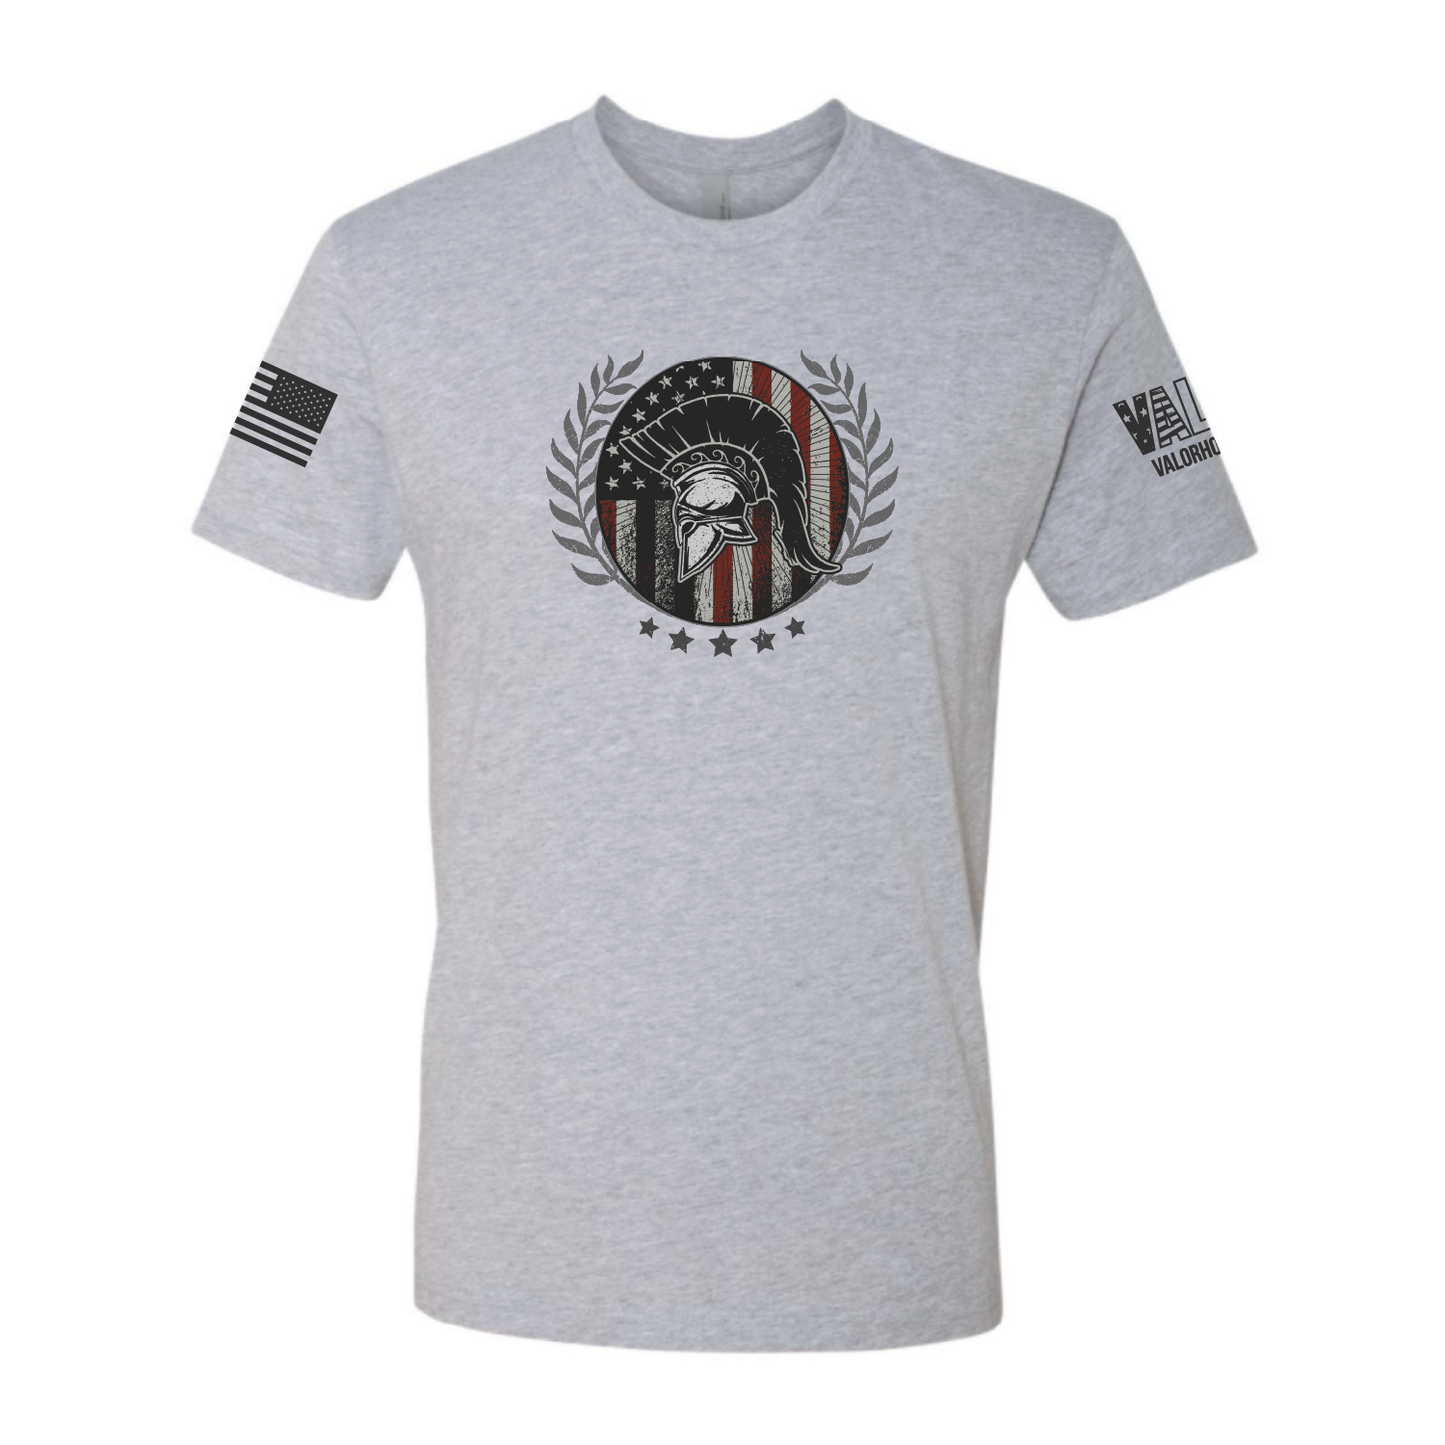 Gentlemen's "Spartan" Shirt